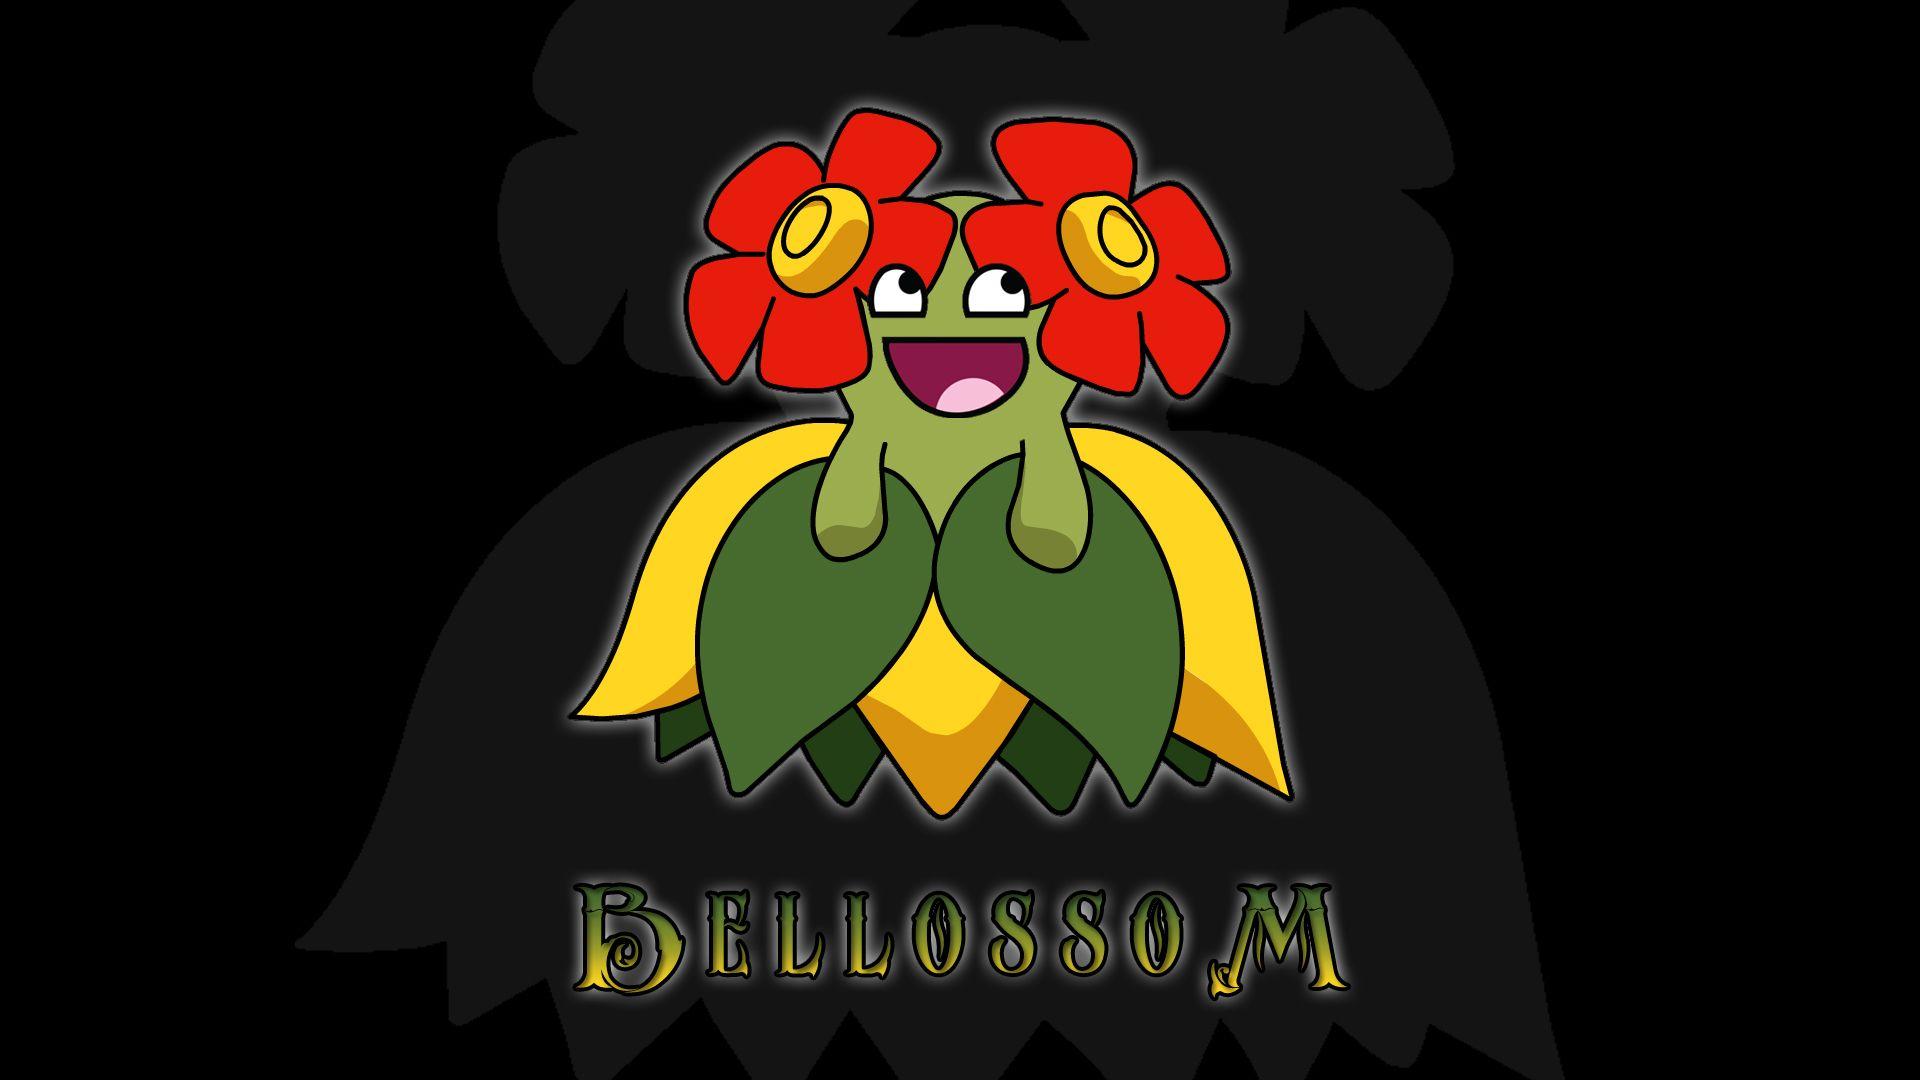 Pokemon GO Bellossom HQ Wallpaper. Full HD Picture